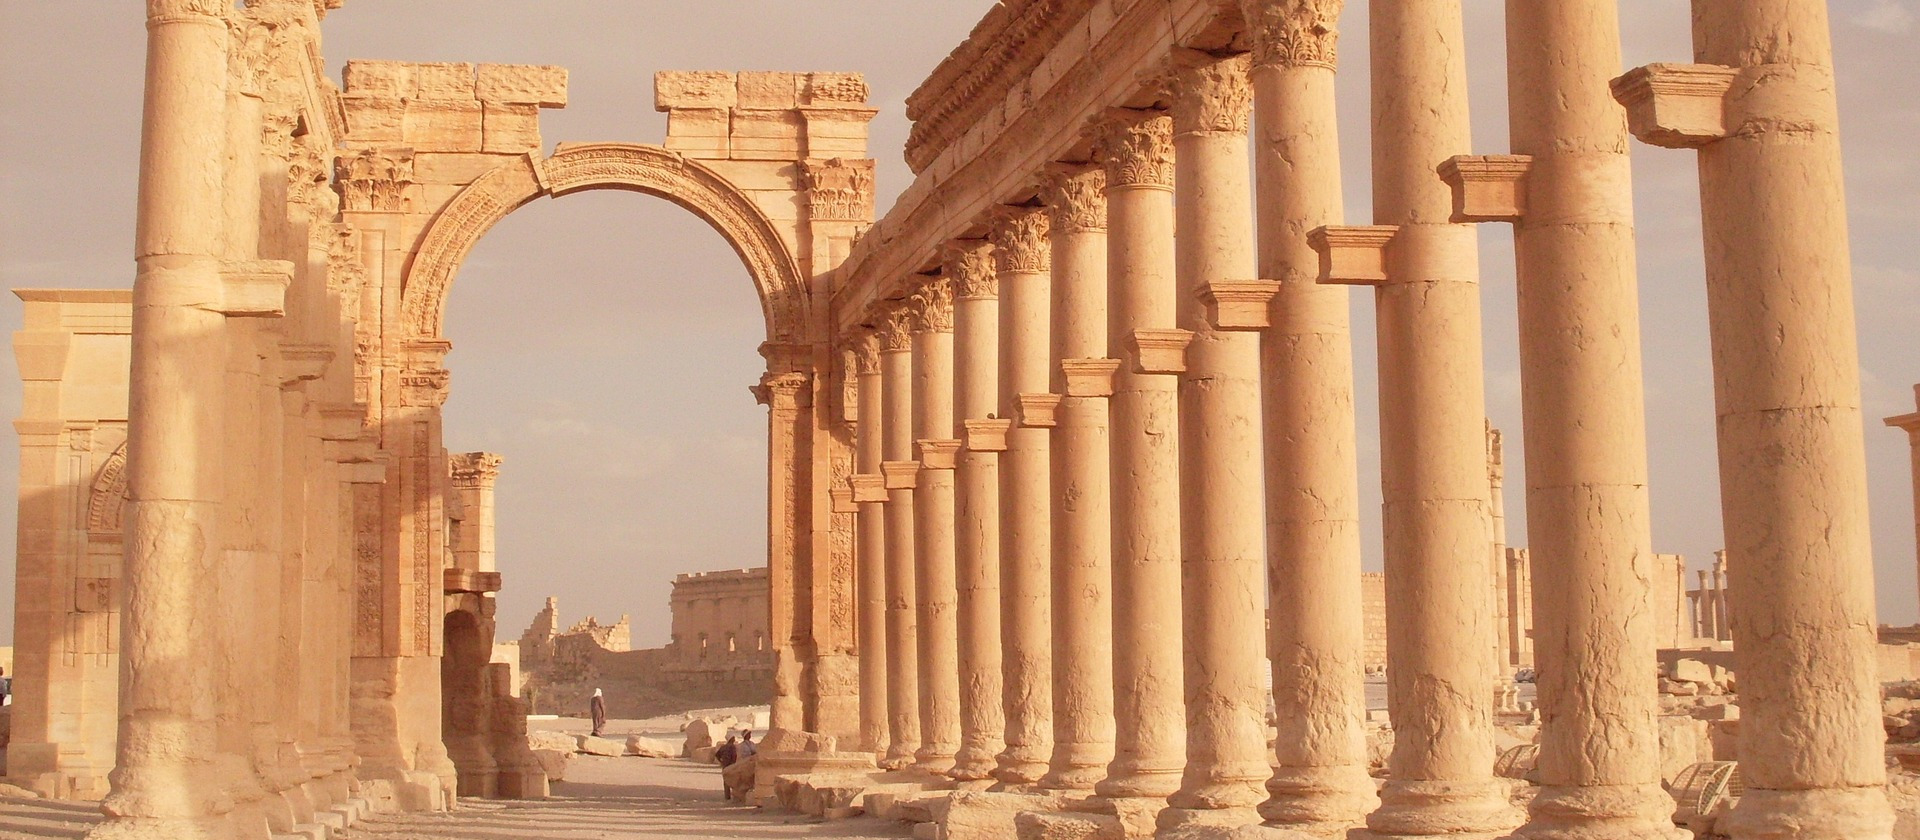 Ancient ruins at Palmyra, Syria